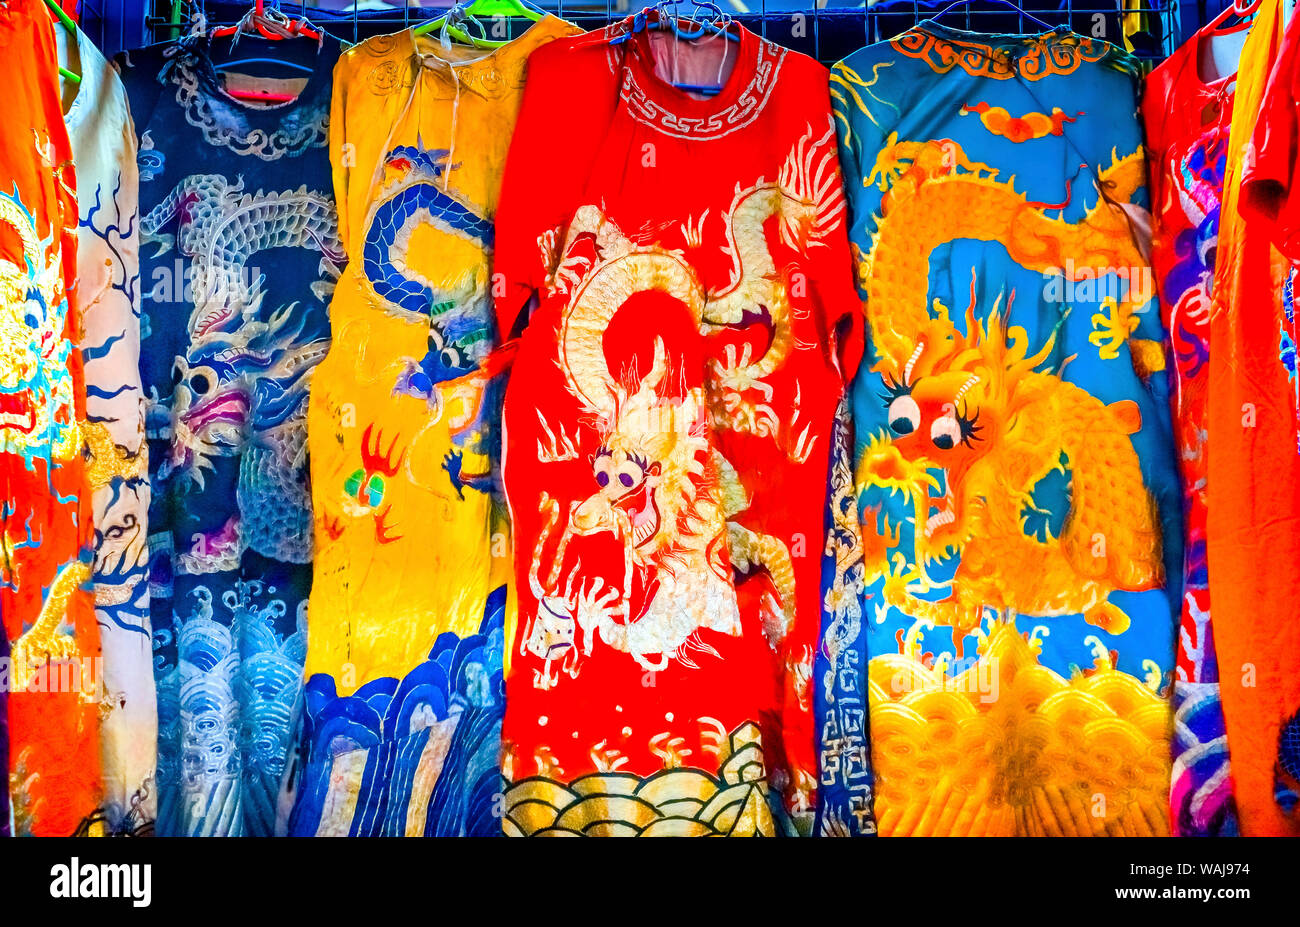 Blu, rosso e giallo dragone cinese replica. Vesti di seta, Panjuan Mercato delle Pulci decorazioni, Pechino, Cina. Panjuan Collectibles delle pulci Mercato ha molti falsi, le repliche e le copie dei prodotti cinesi. Foto Stock